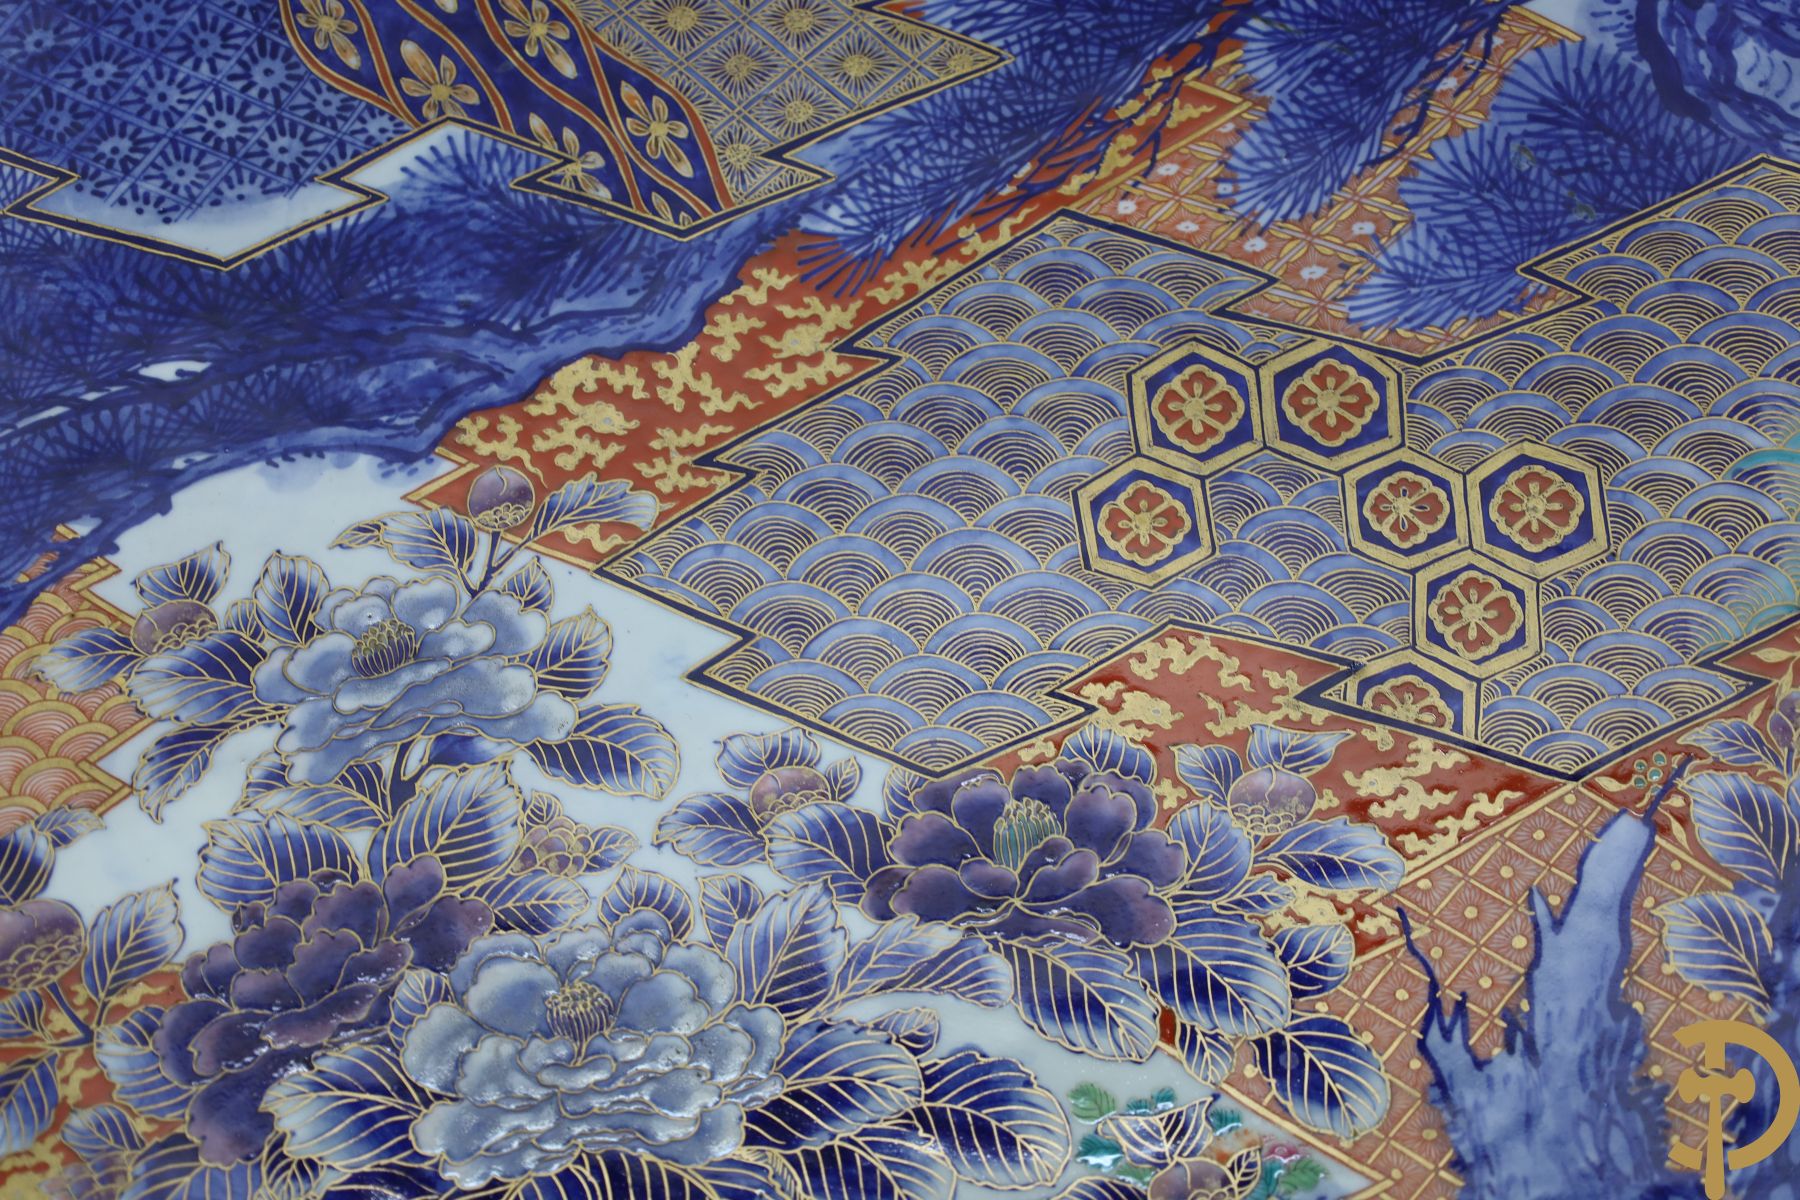 Zeer grote Japanse porseleinen Imari schotel met bloemendecor